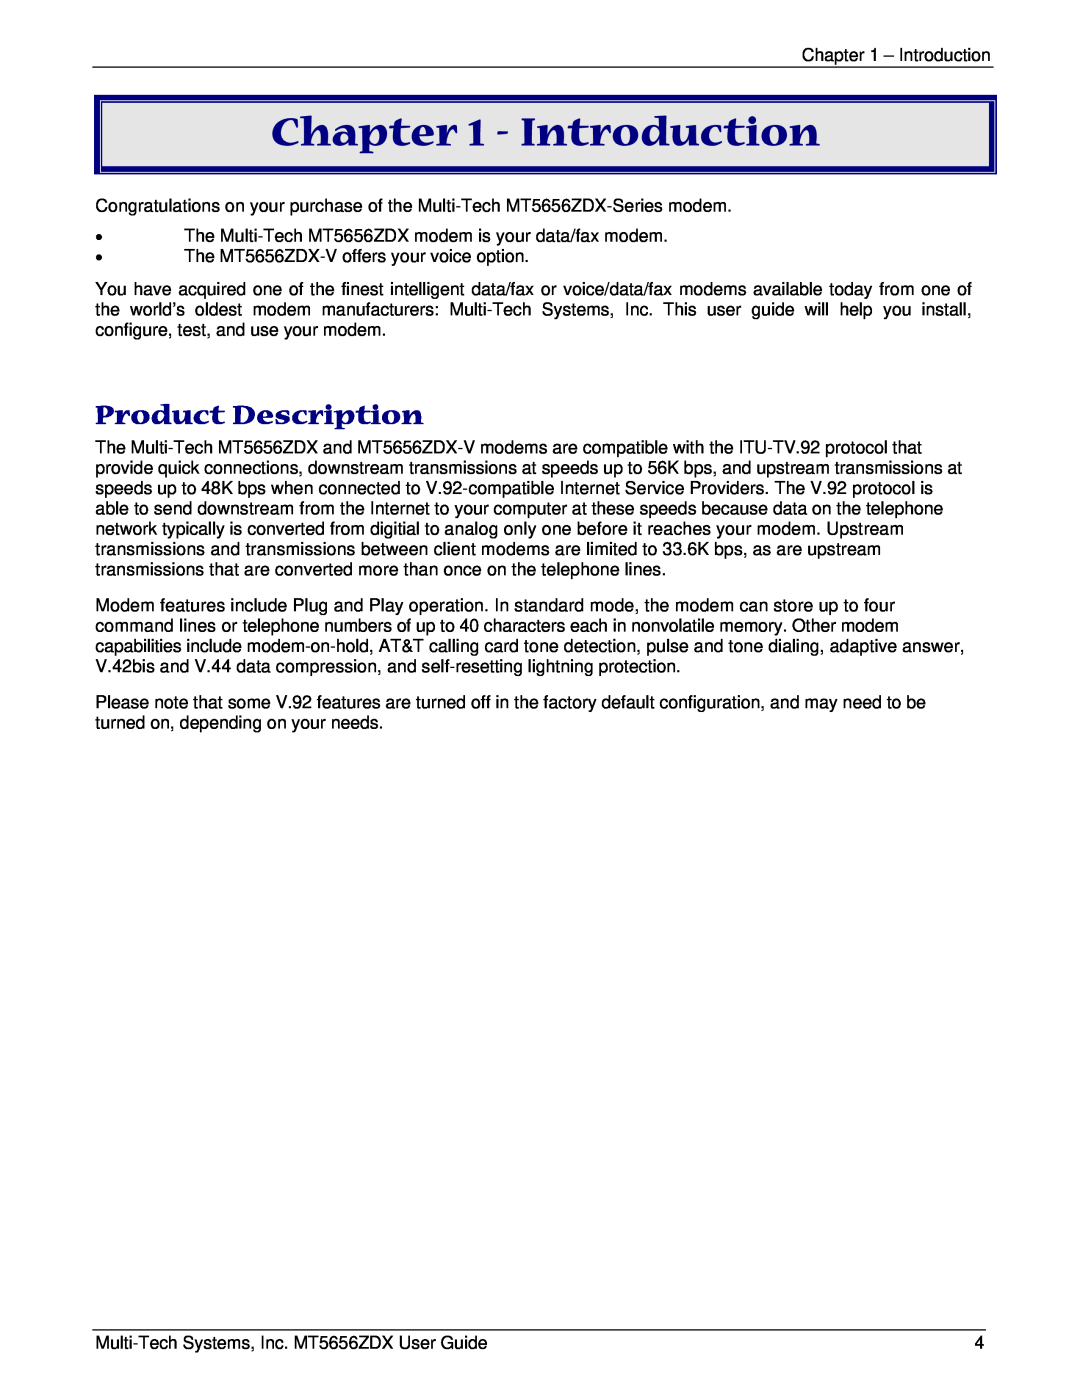 Multi Tech Equipment MT5656ZDX manual Introduction, Product Description 